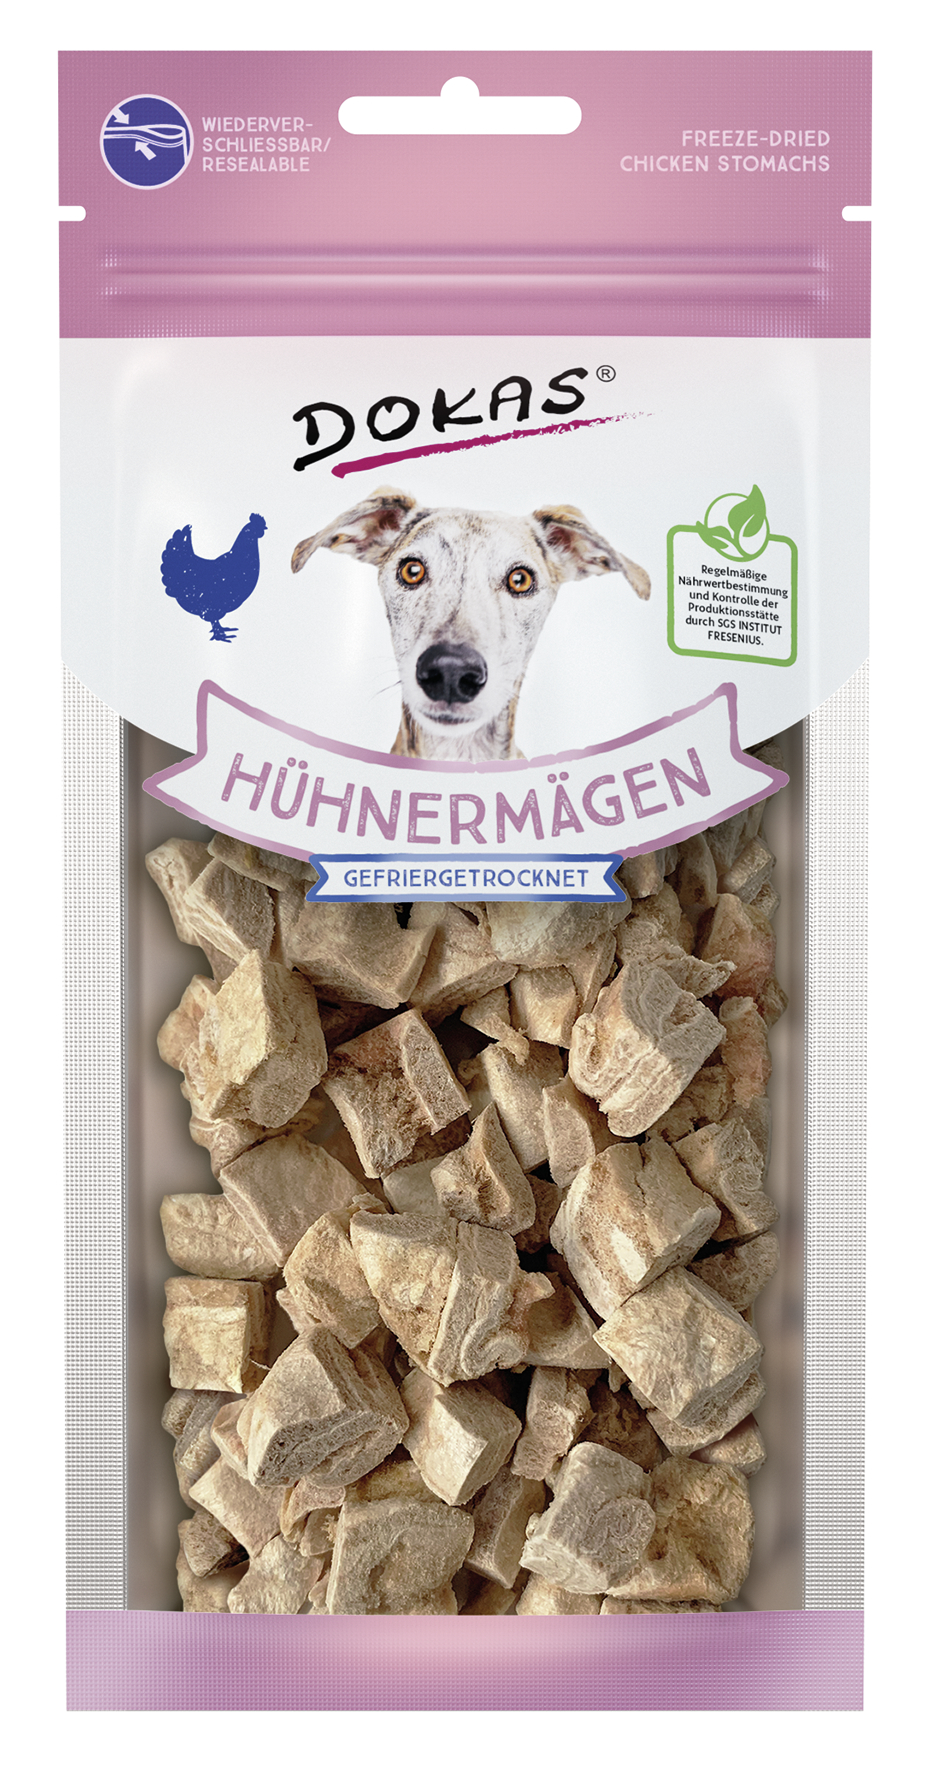 BTG BETEILIGUNGS GMBH Dok Dog Snack Hühnermäg.gefriergetr. 20g 